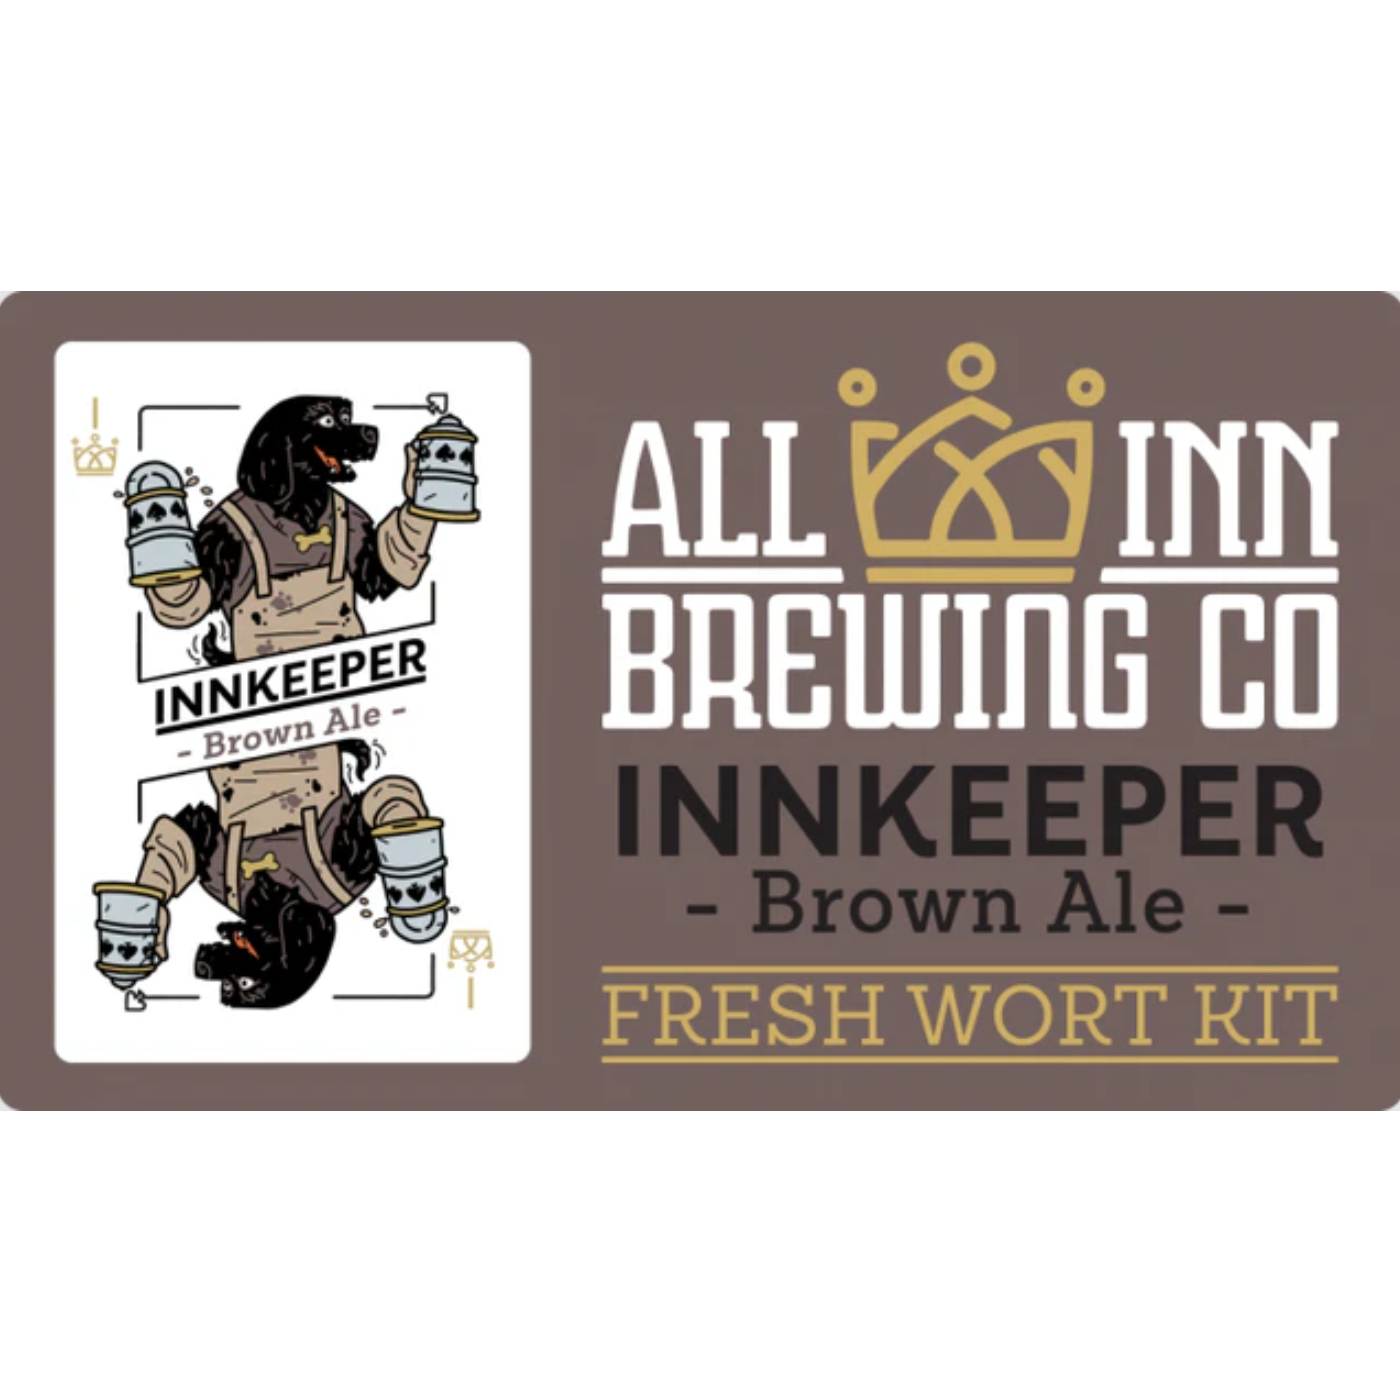 InnKeeper Brown Ale - Fresh Wort Kit